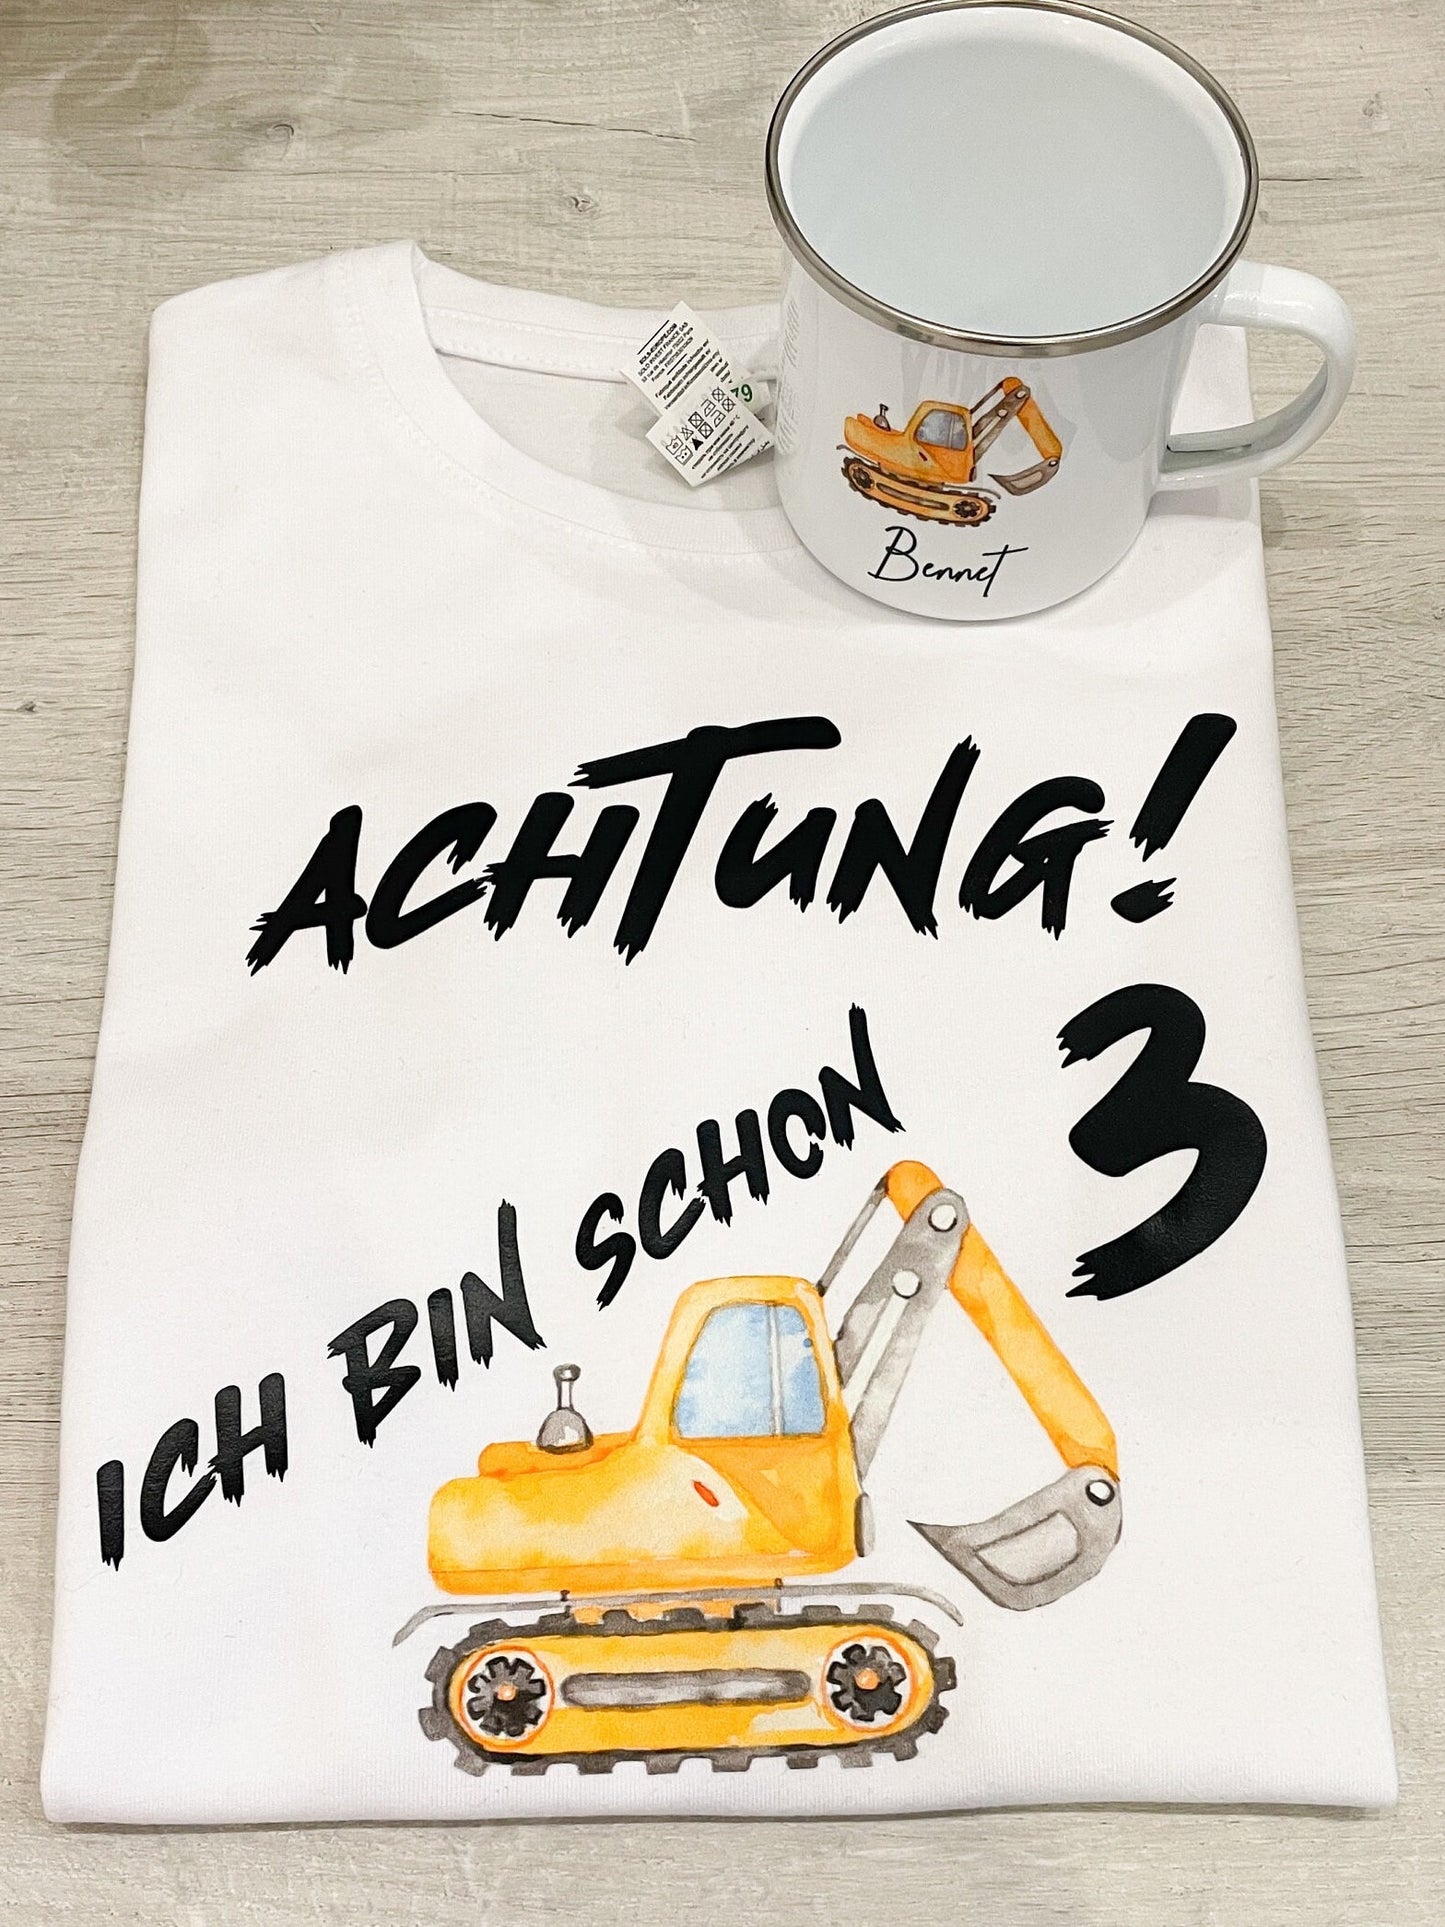 Geburtstags Set für Baggerfans / Shirt und Tasse mit Baggermotiv